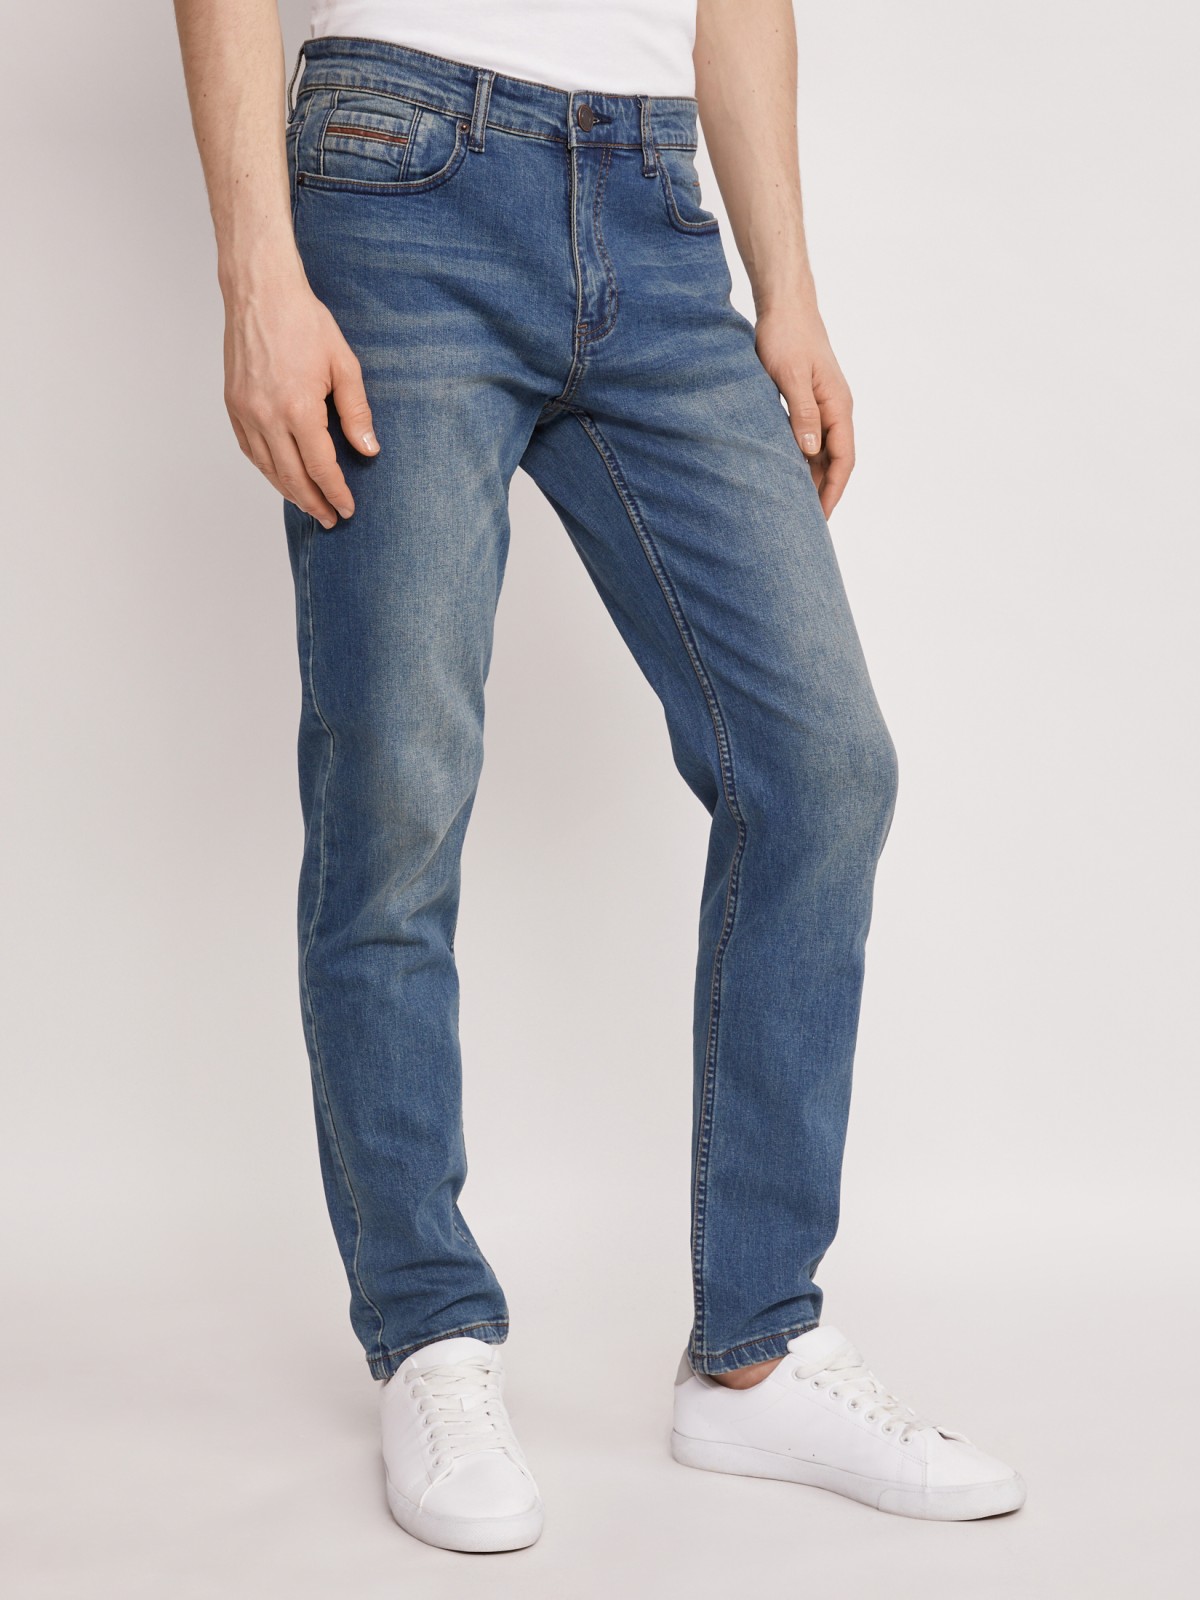 Брюки джинсовые zolla 01121714S033, цвет бирюзовый, размер 30 - фото 2